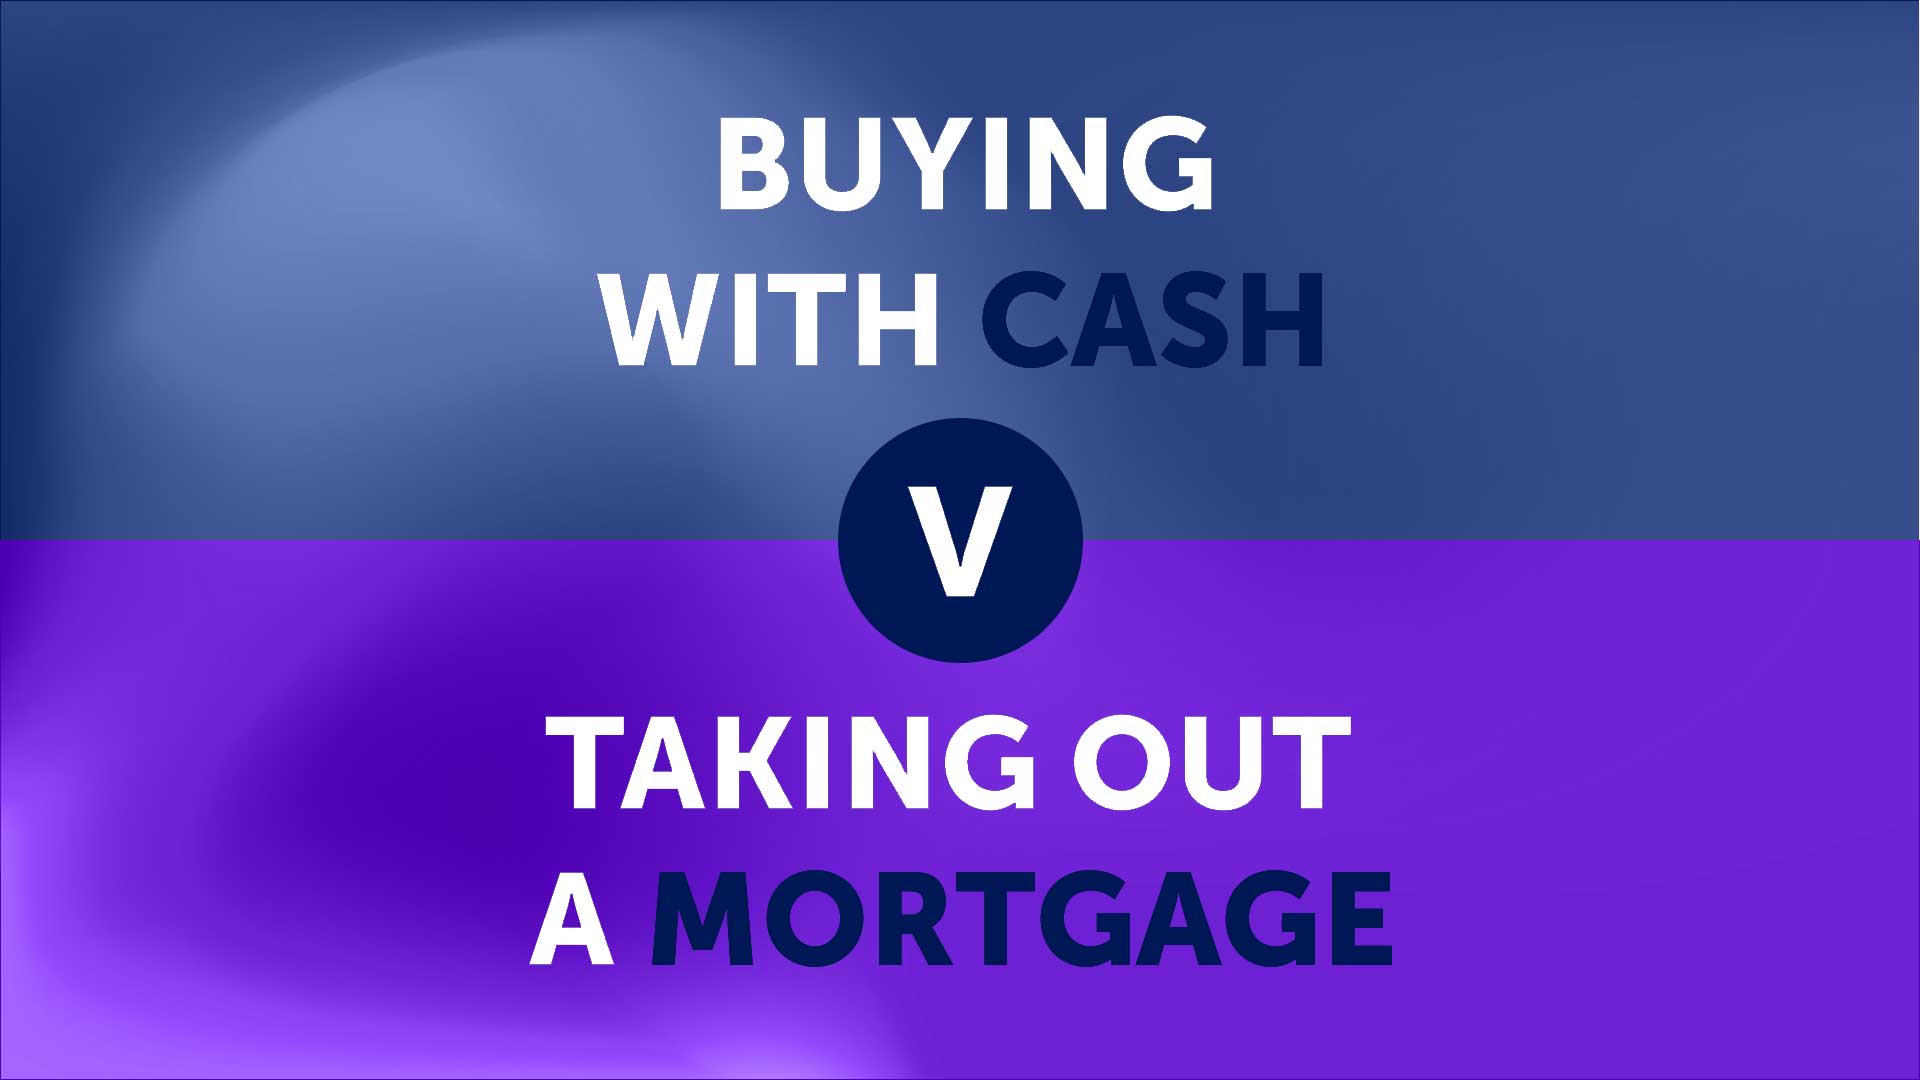 Cash vs Mortgage